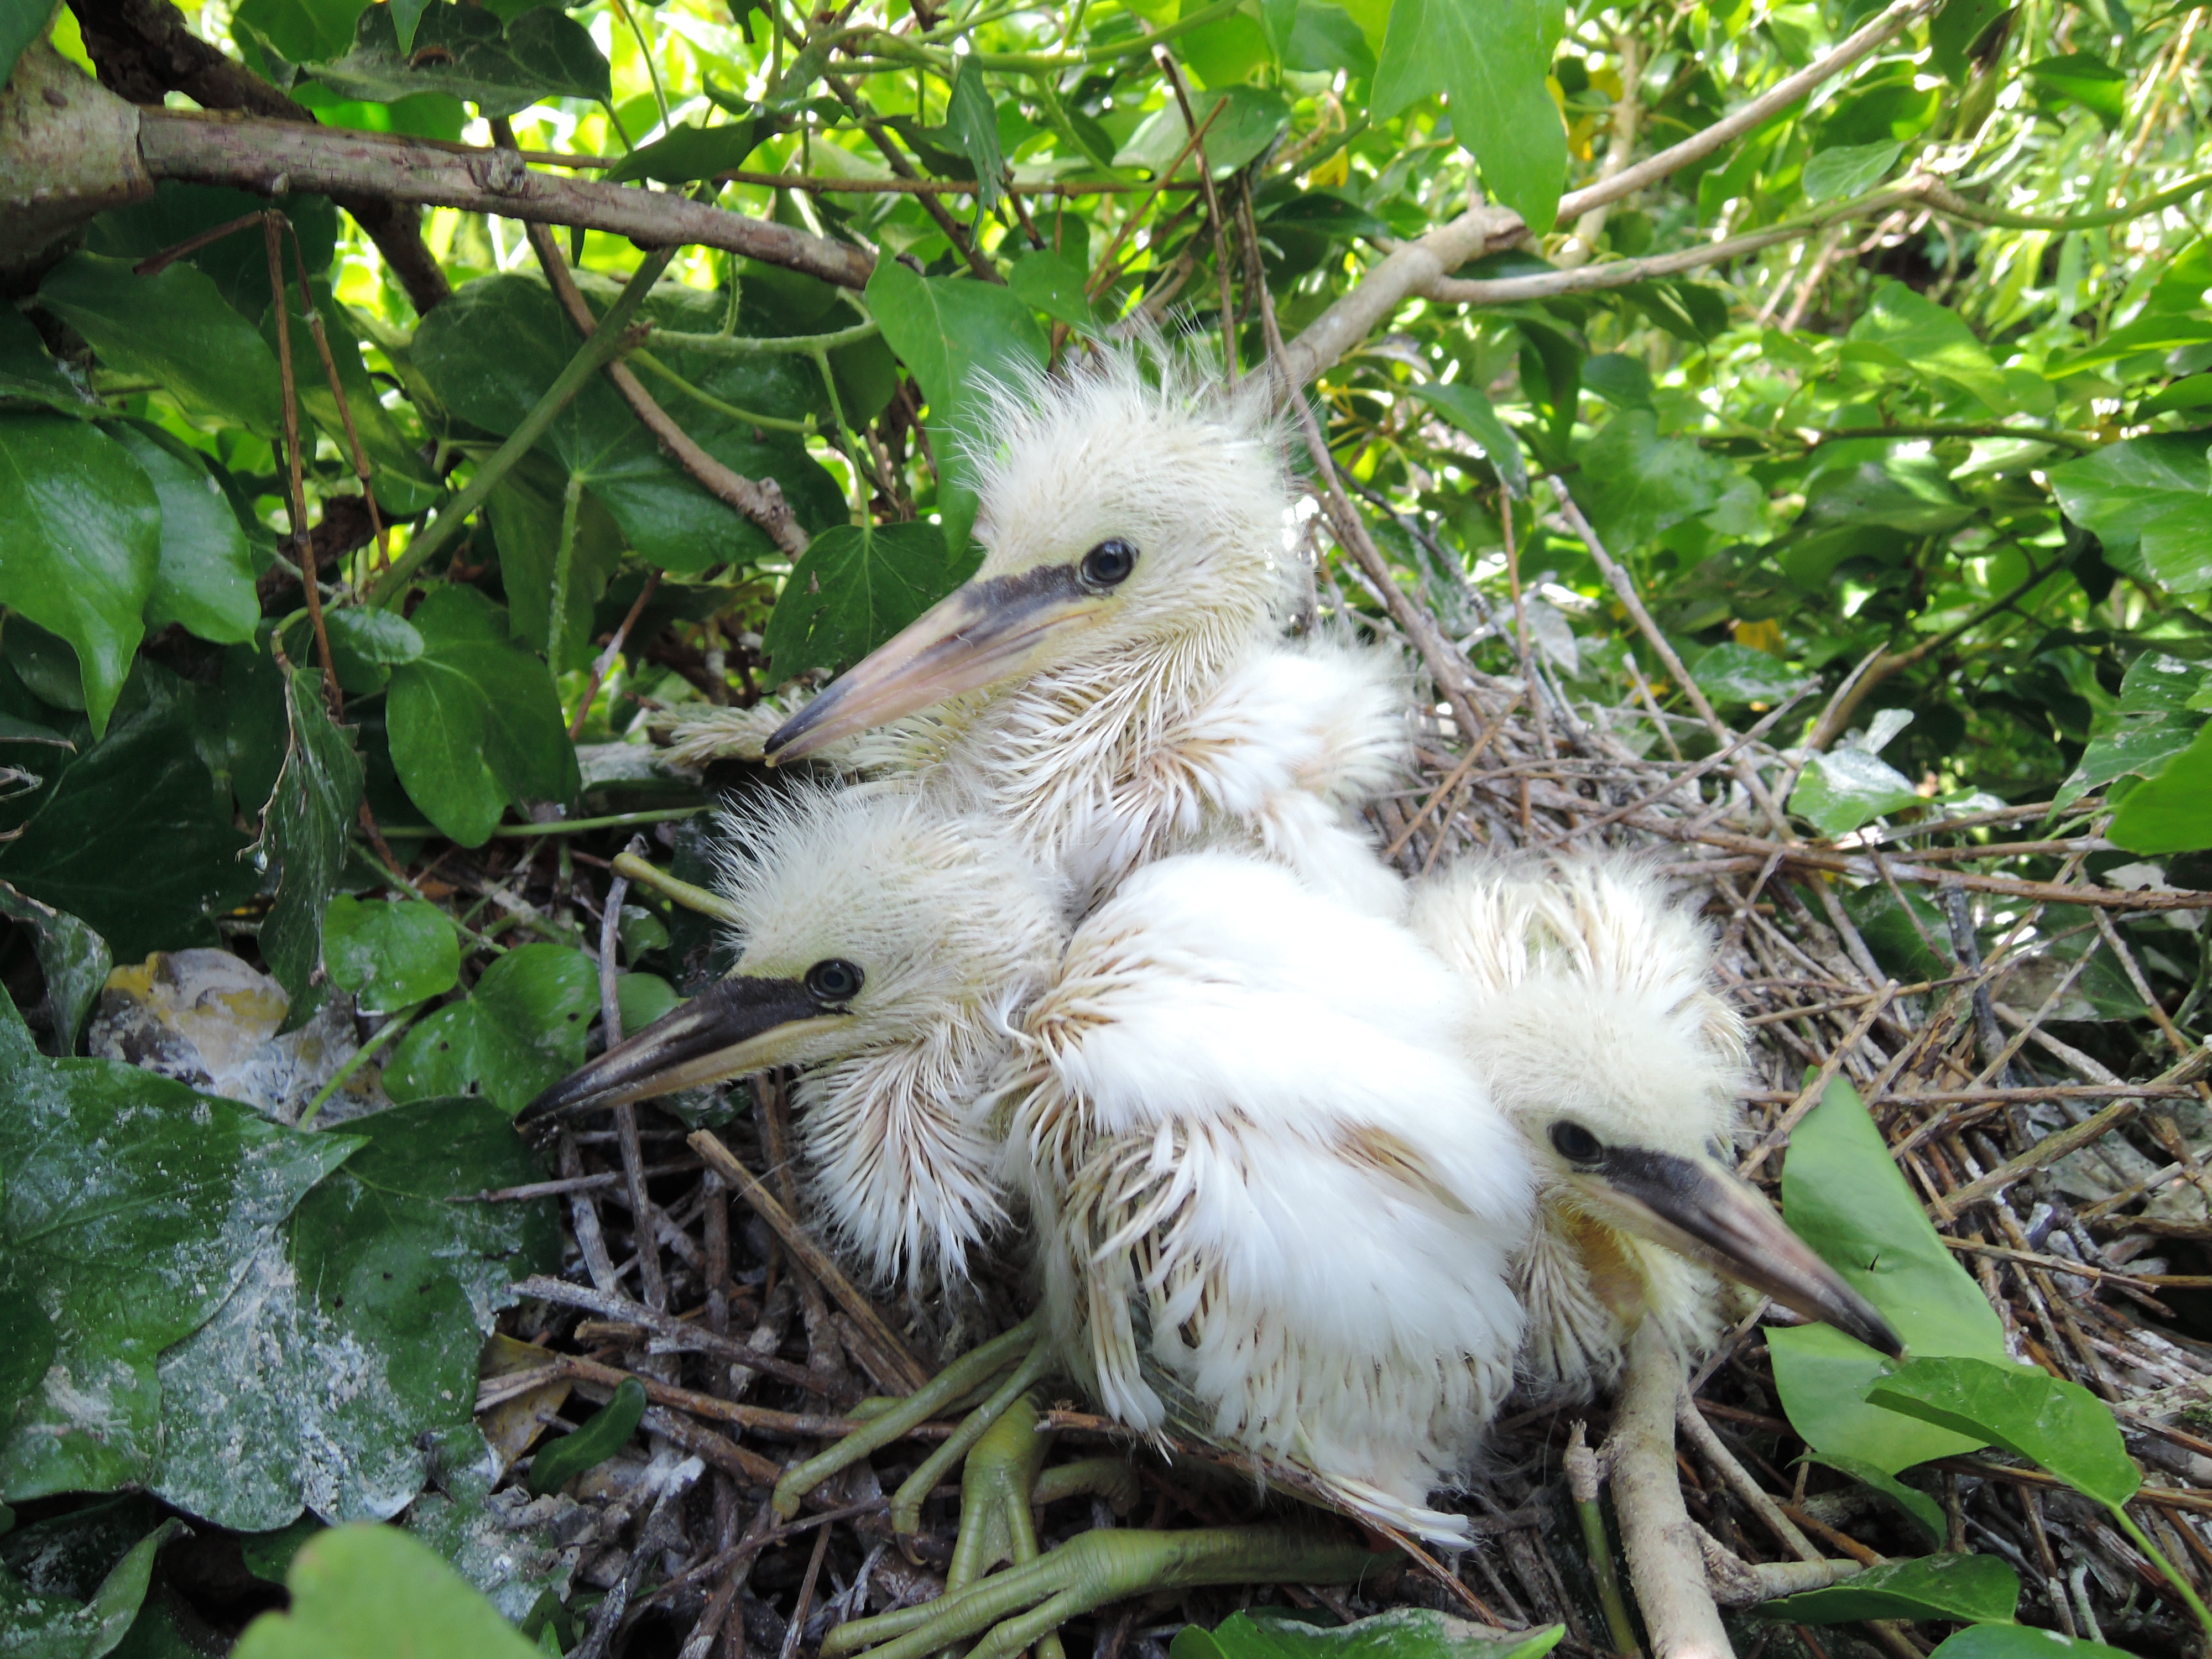 Little Egret Chicks in Nest   Verulamium Lake 30 May 2015